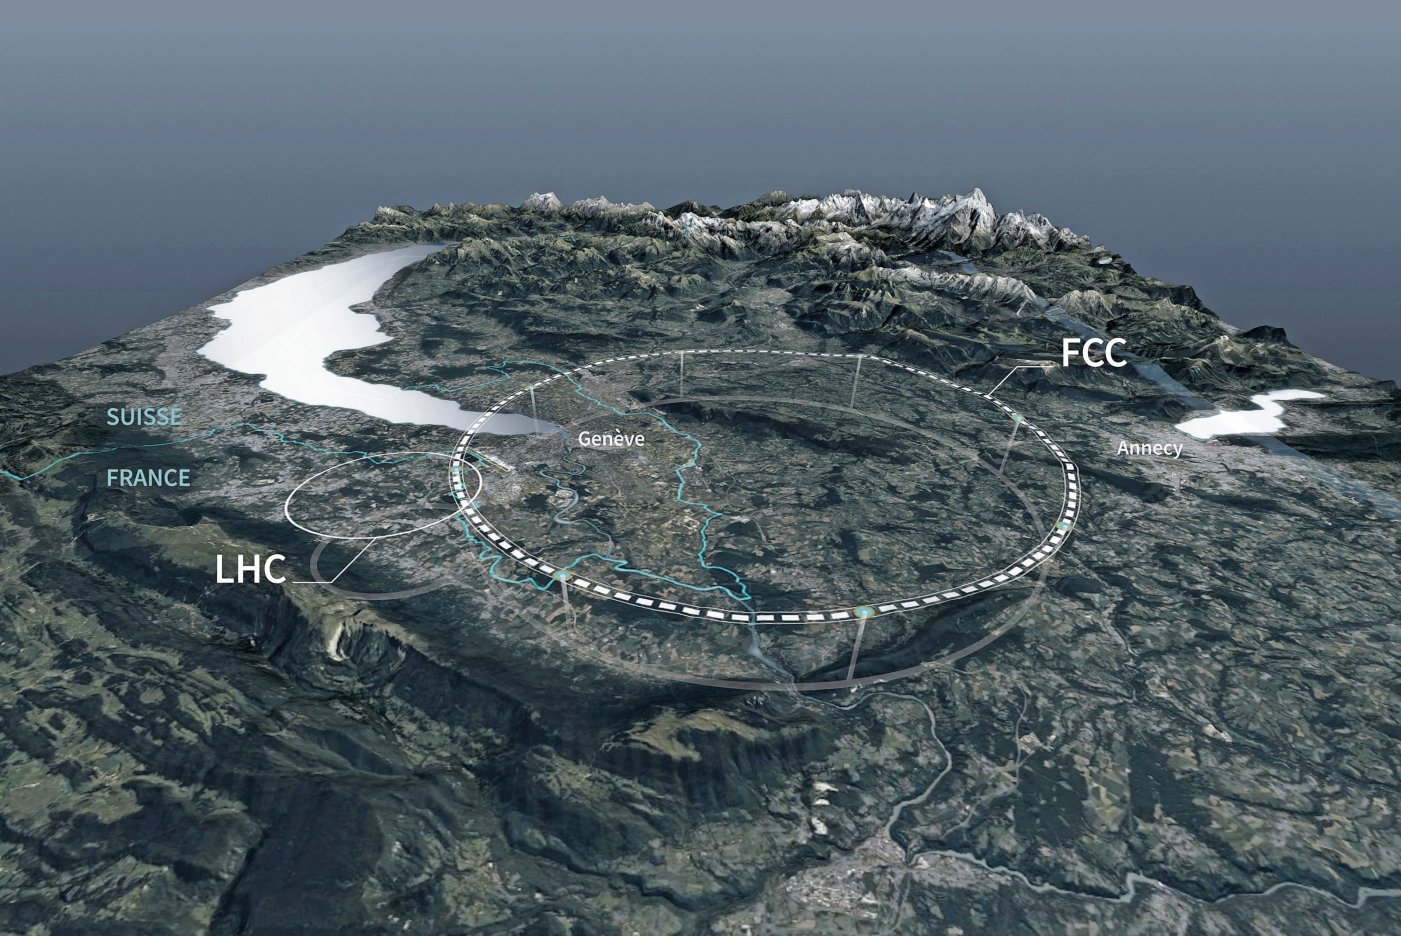 La circonférence prévue du nouveau collisionneur FCC serait trois fois plus importante que celle de l’actuel LHC.